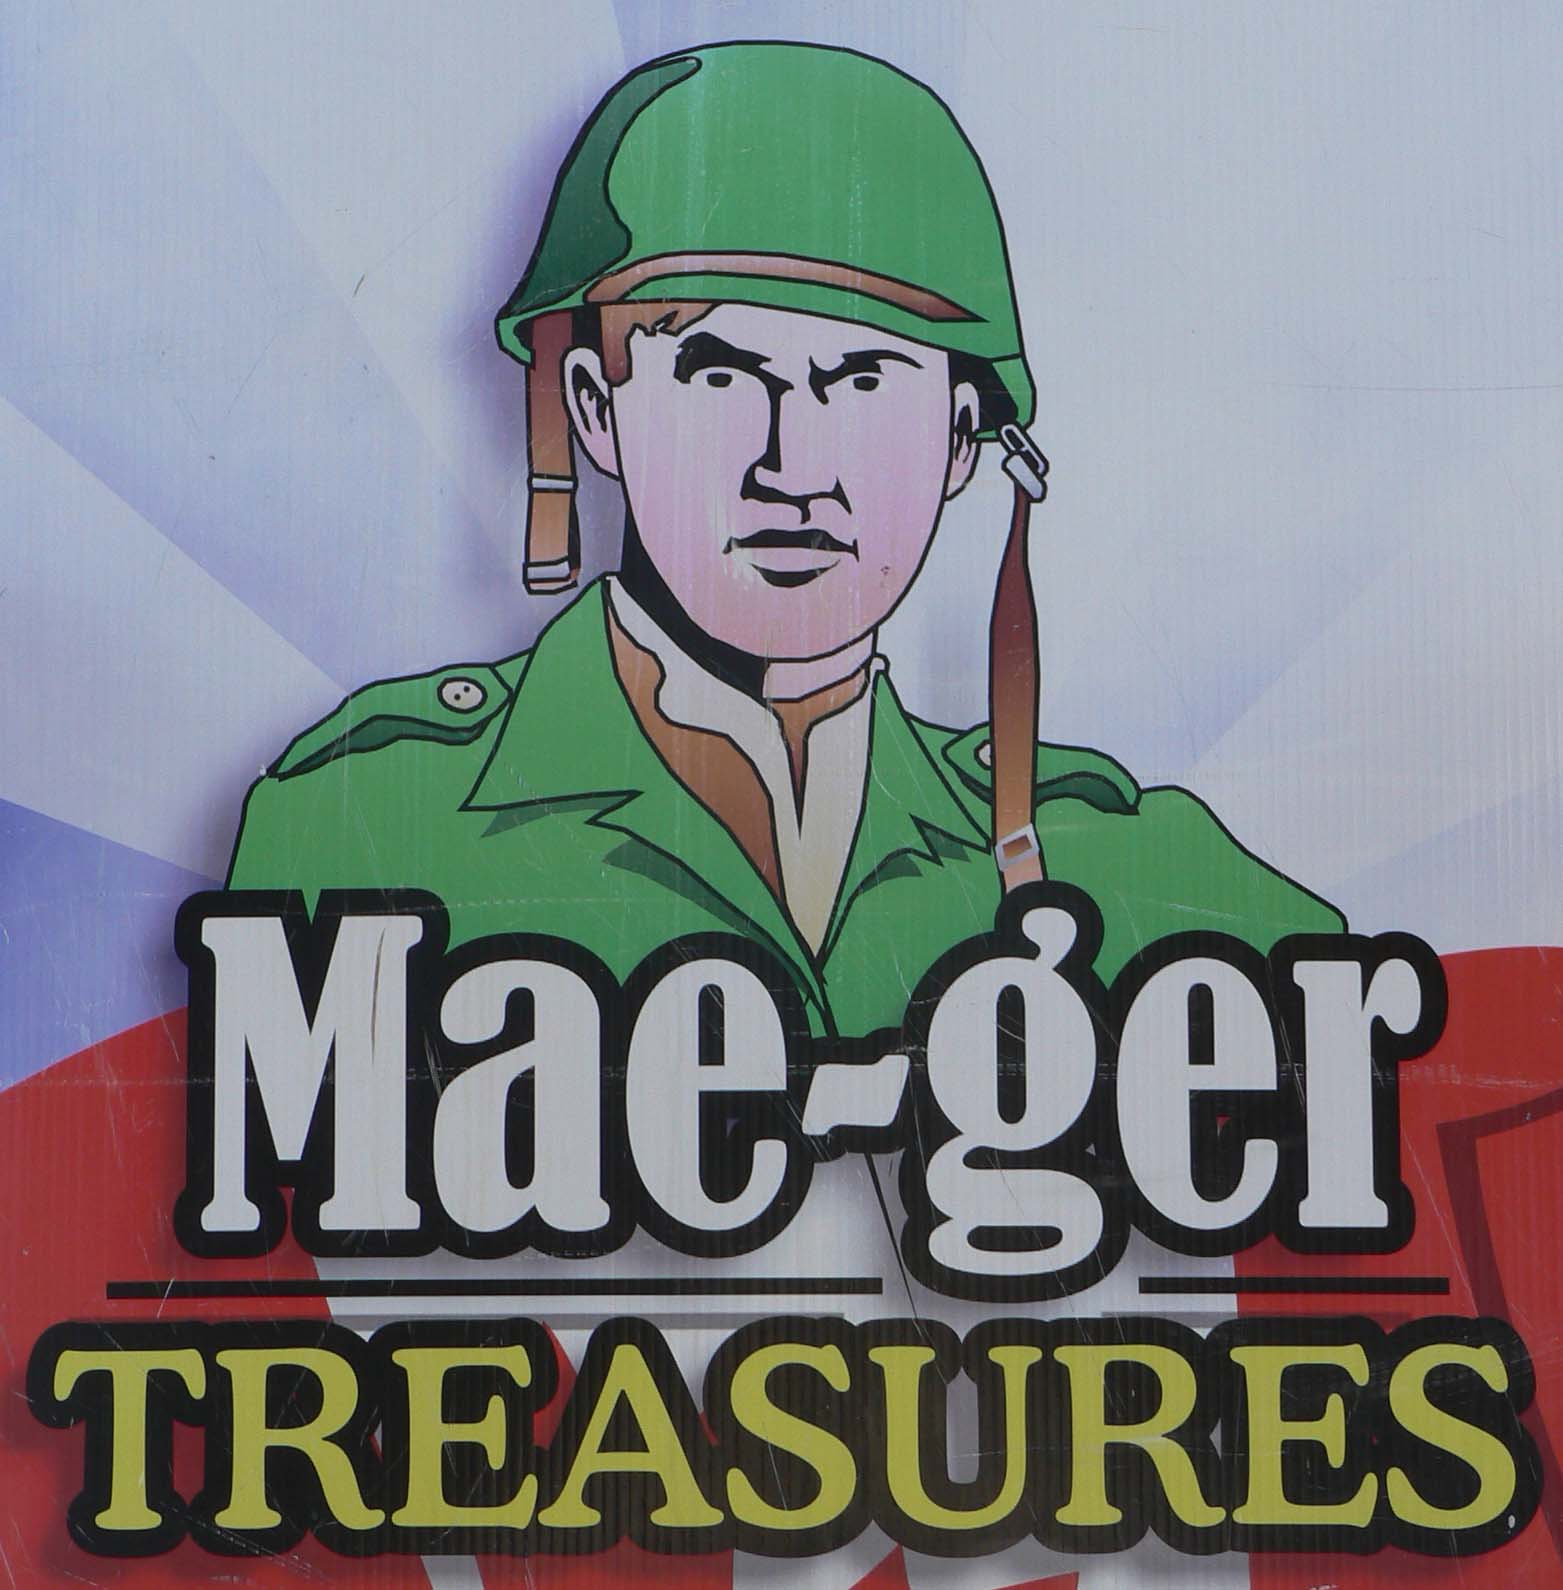  Mae-ger Treasures